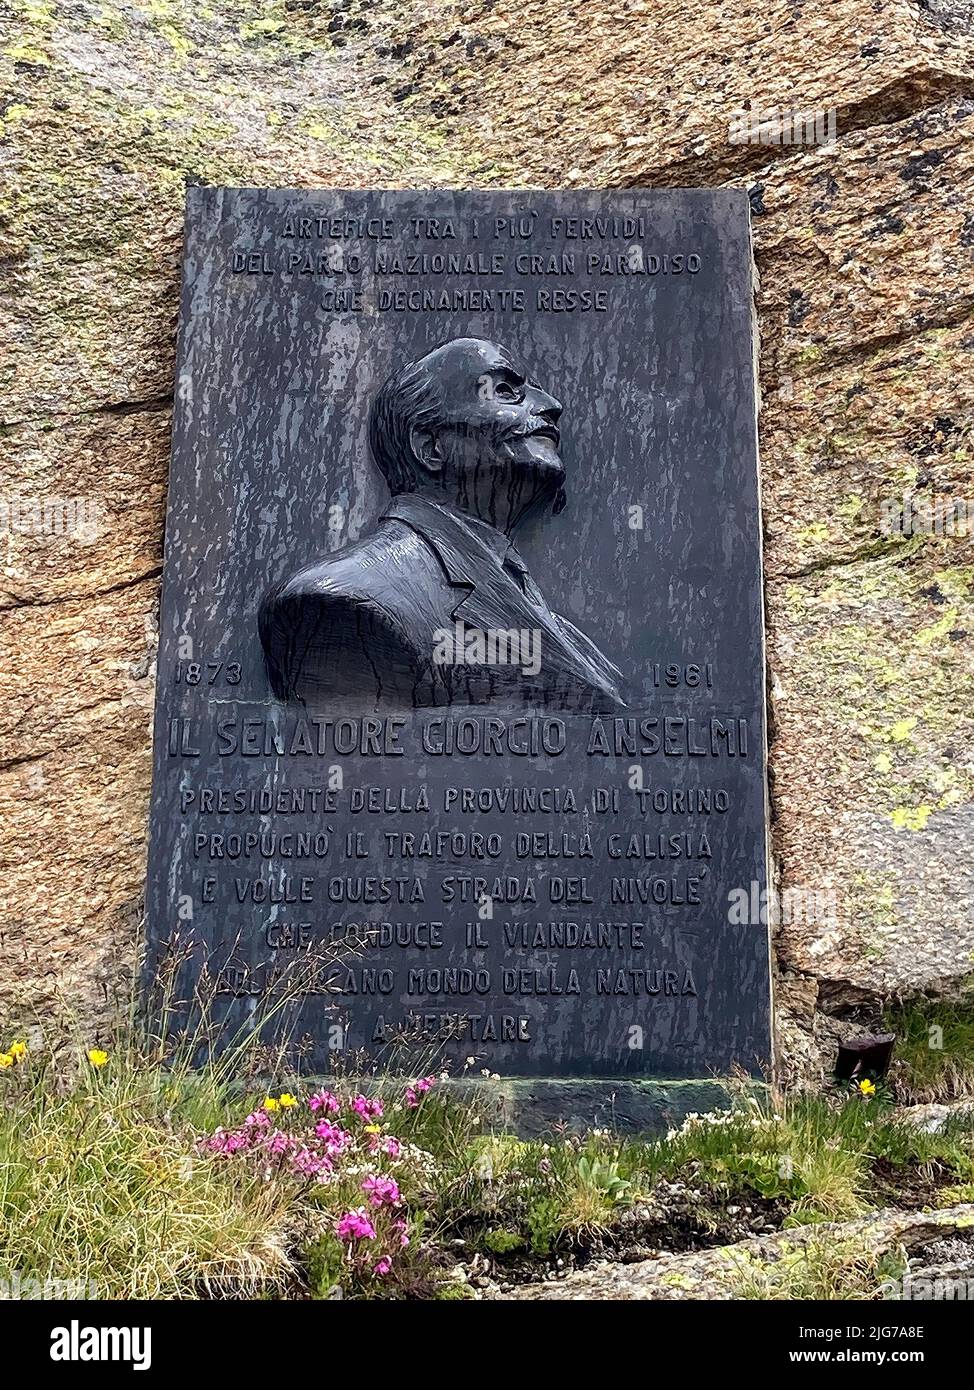 Lapide commemorativa sulla cima del Colle del Nivolet in Alpi per il senatore Giorgio Ermanno Anselmi, primo presidente della prima Nazionale Italiana Foto Stock